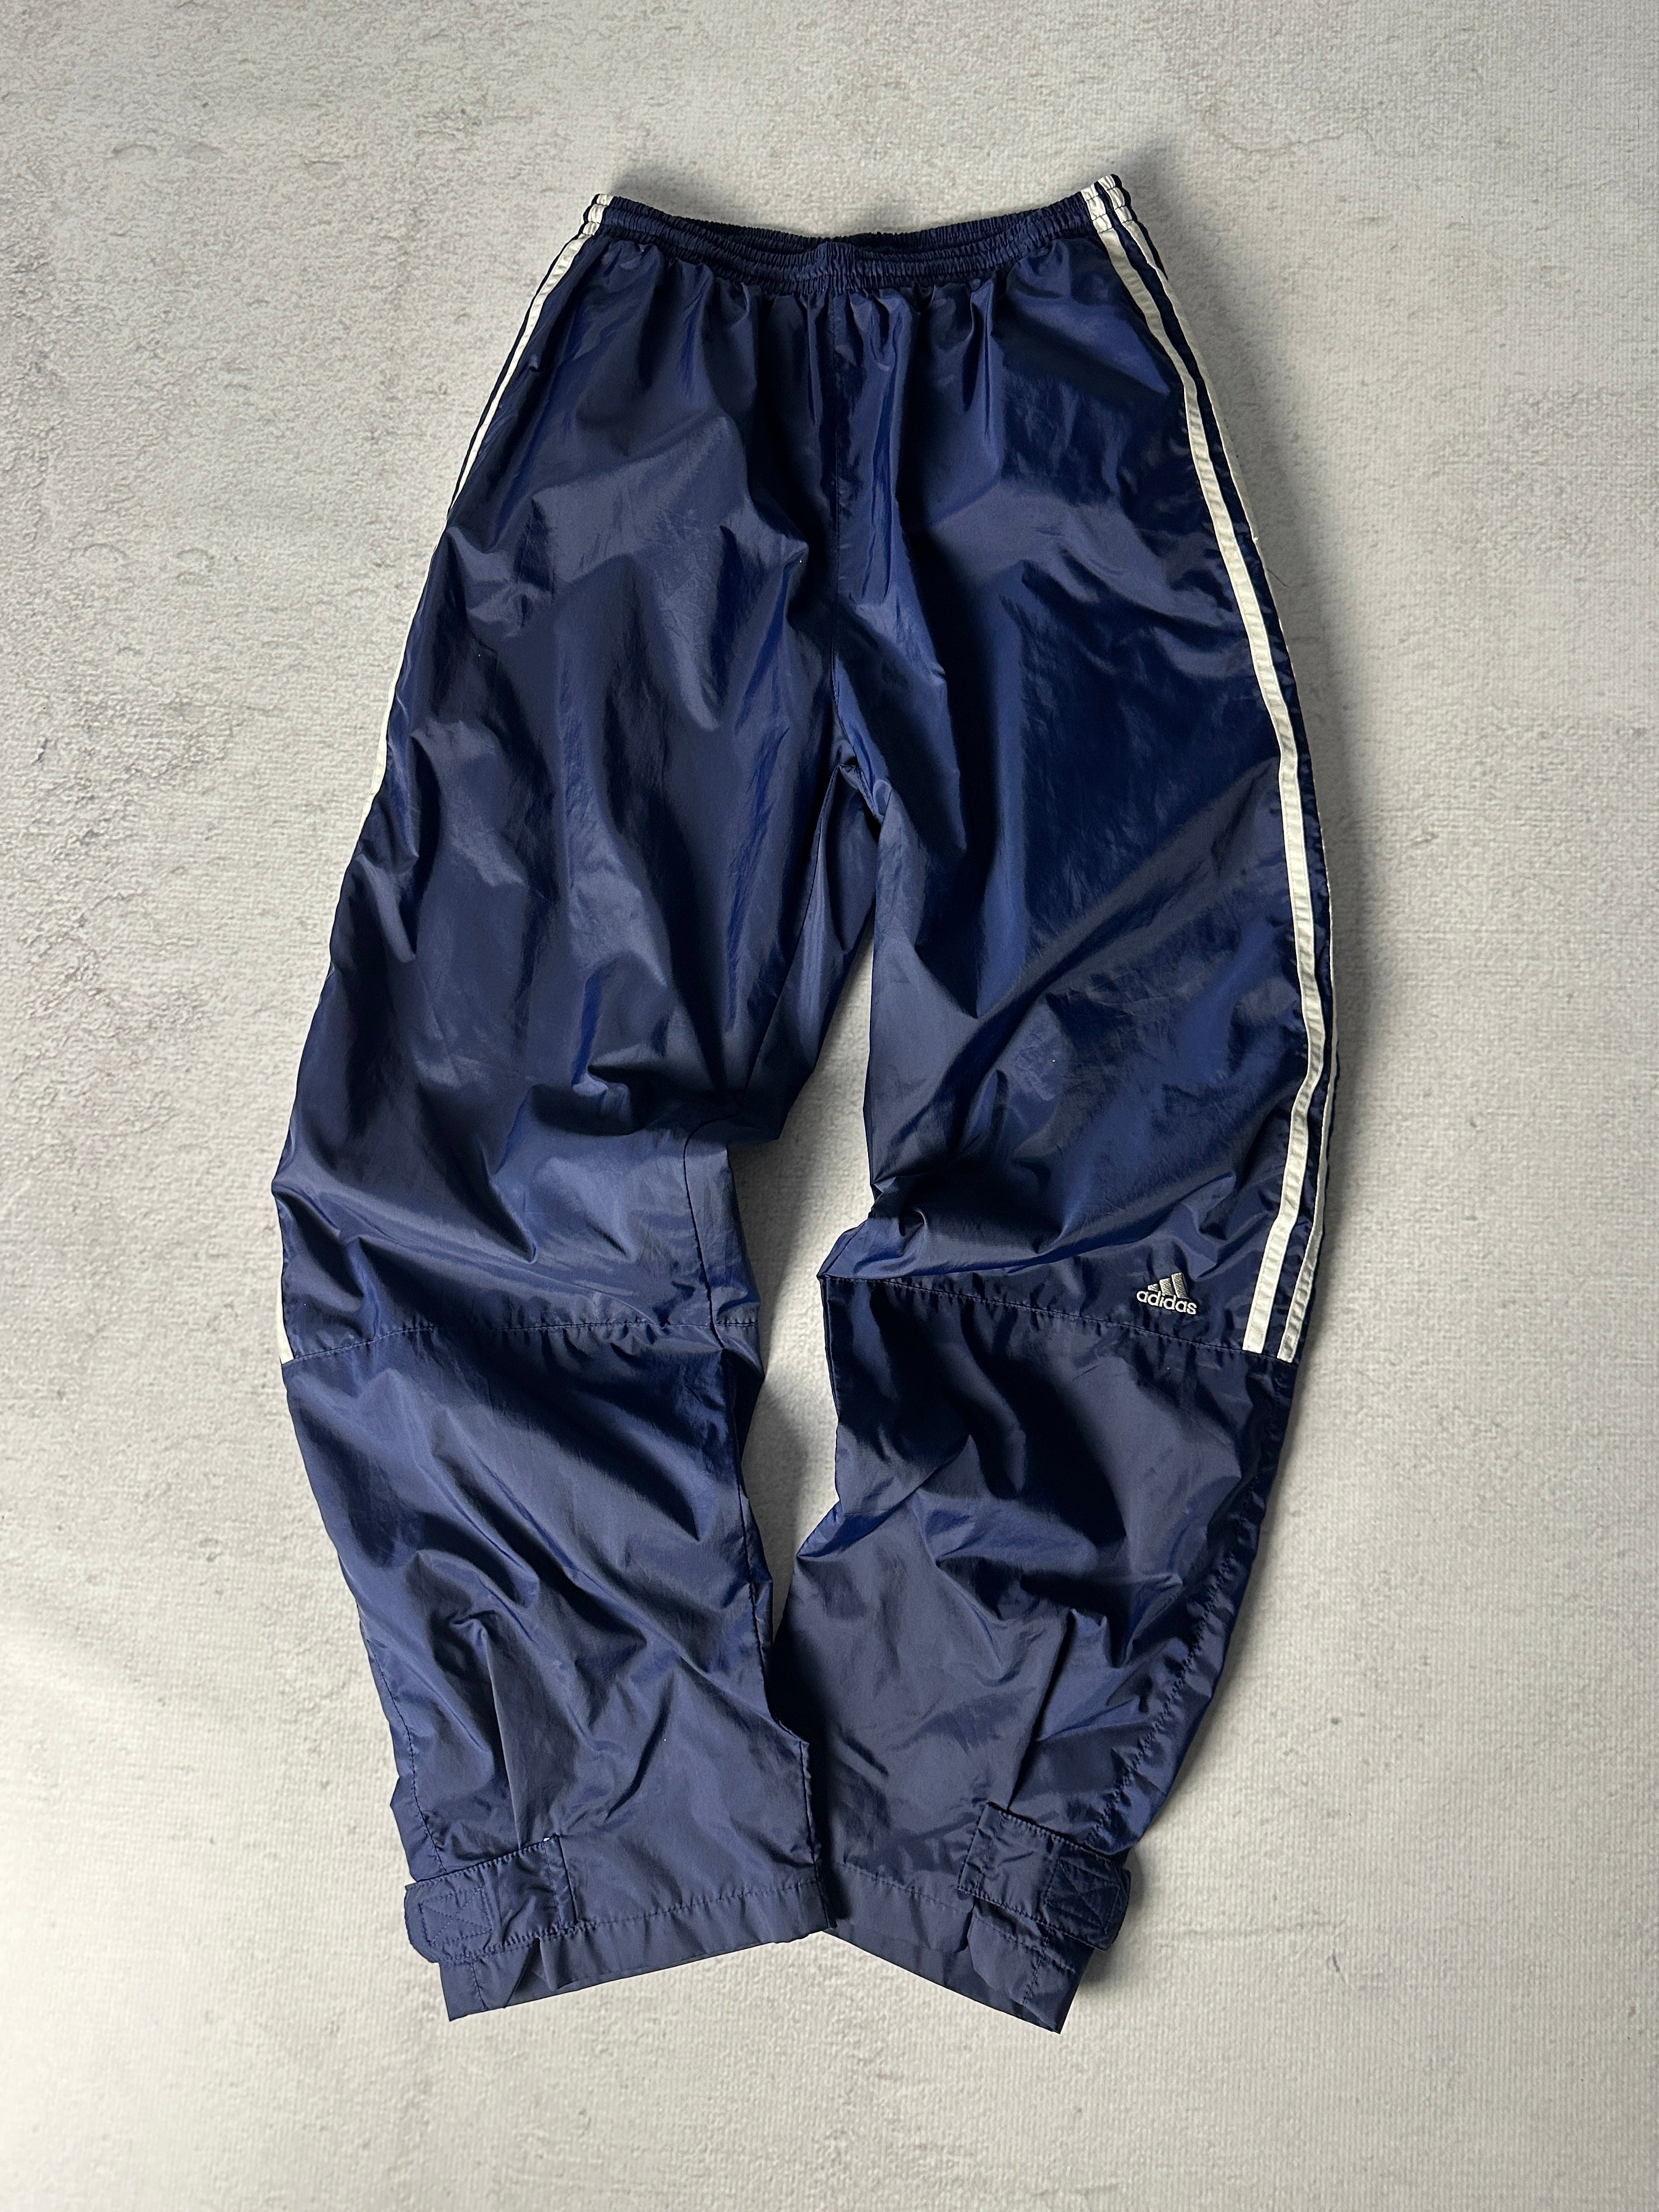 Vintage Adidas Track Pants - Men's Medium